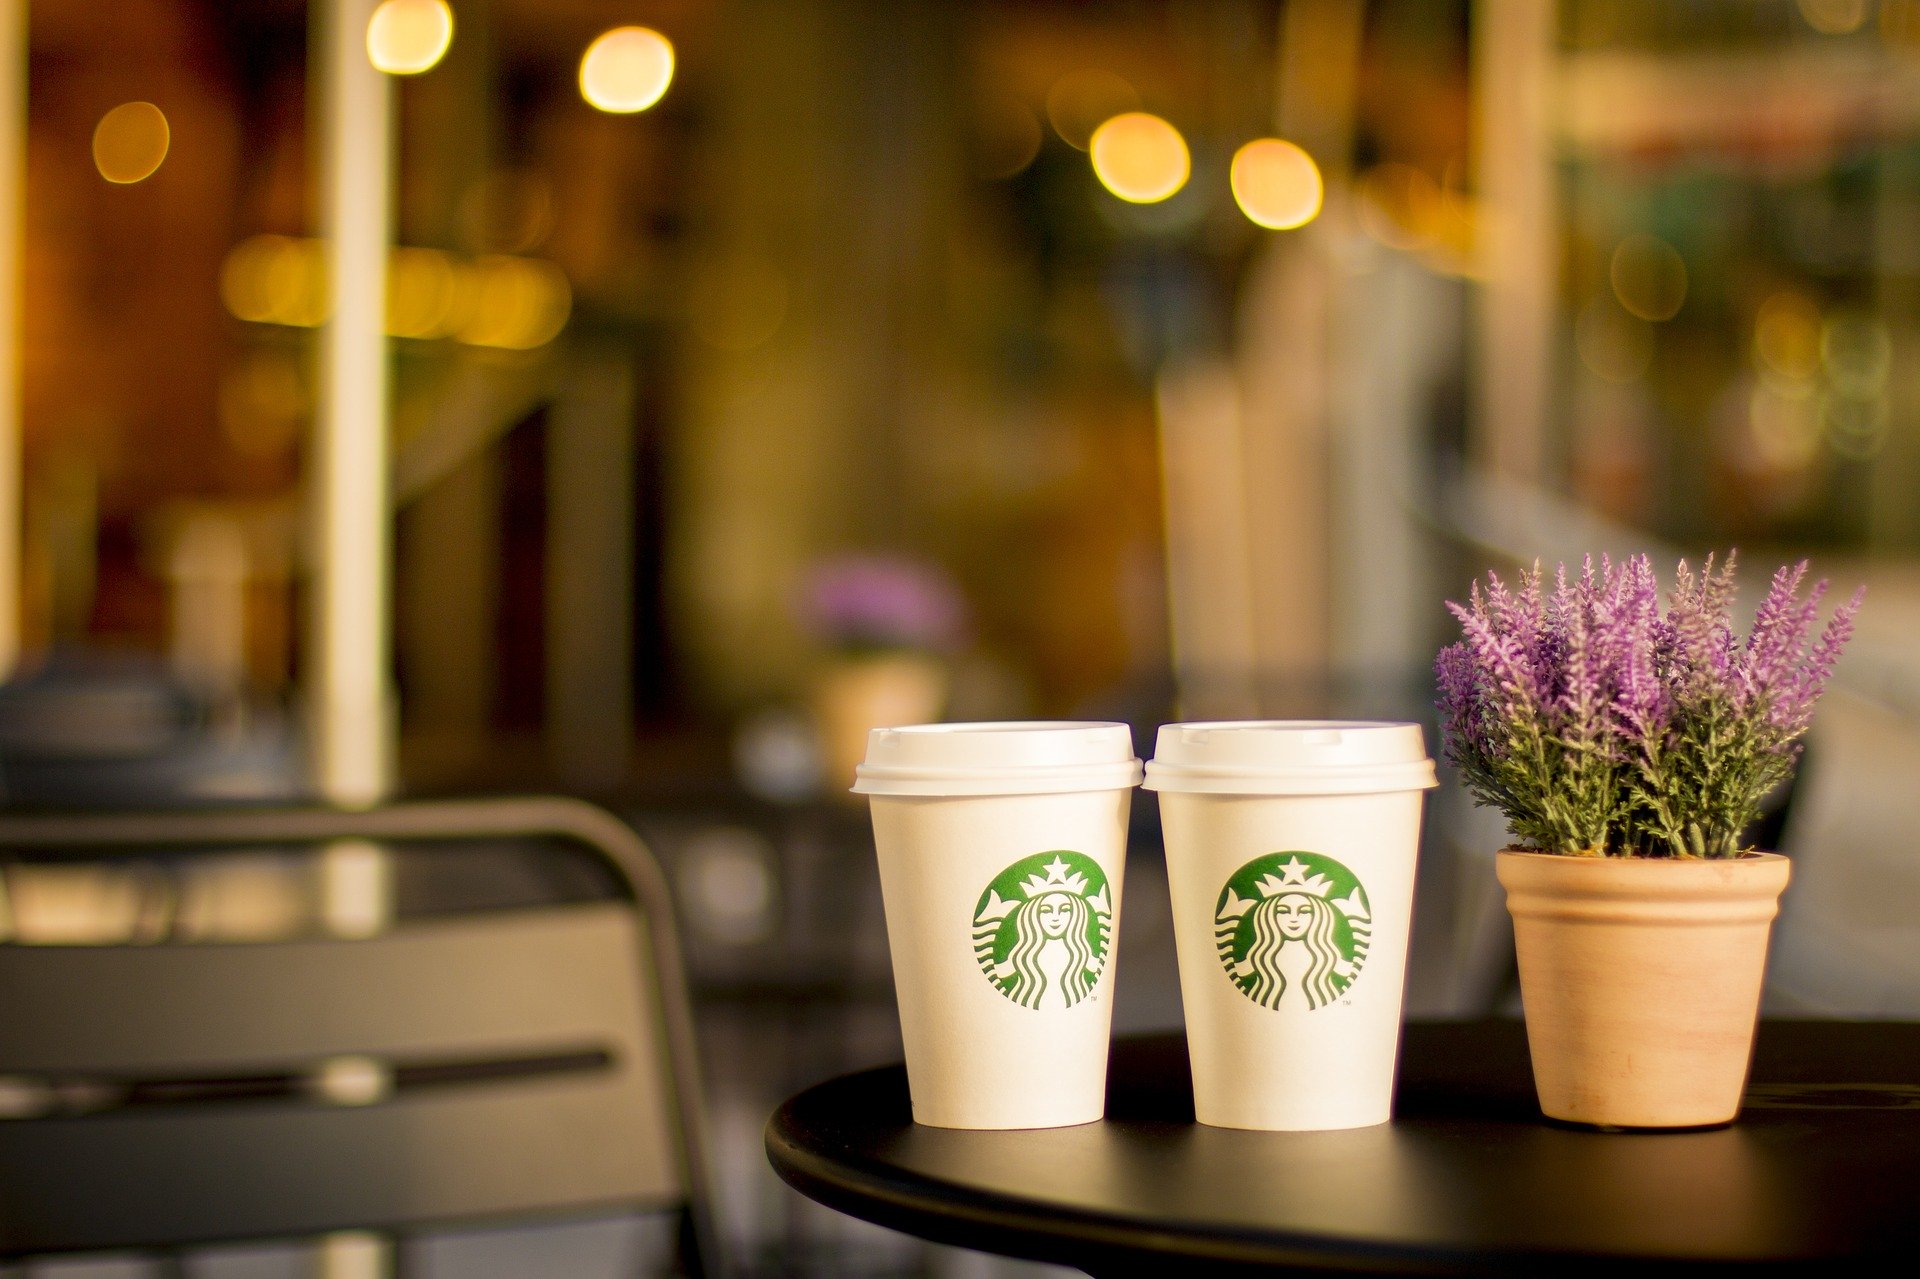 Starbucks oprește utilizarea recipientelor personale din cauza coronavirusului